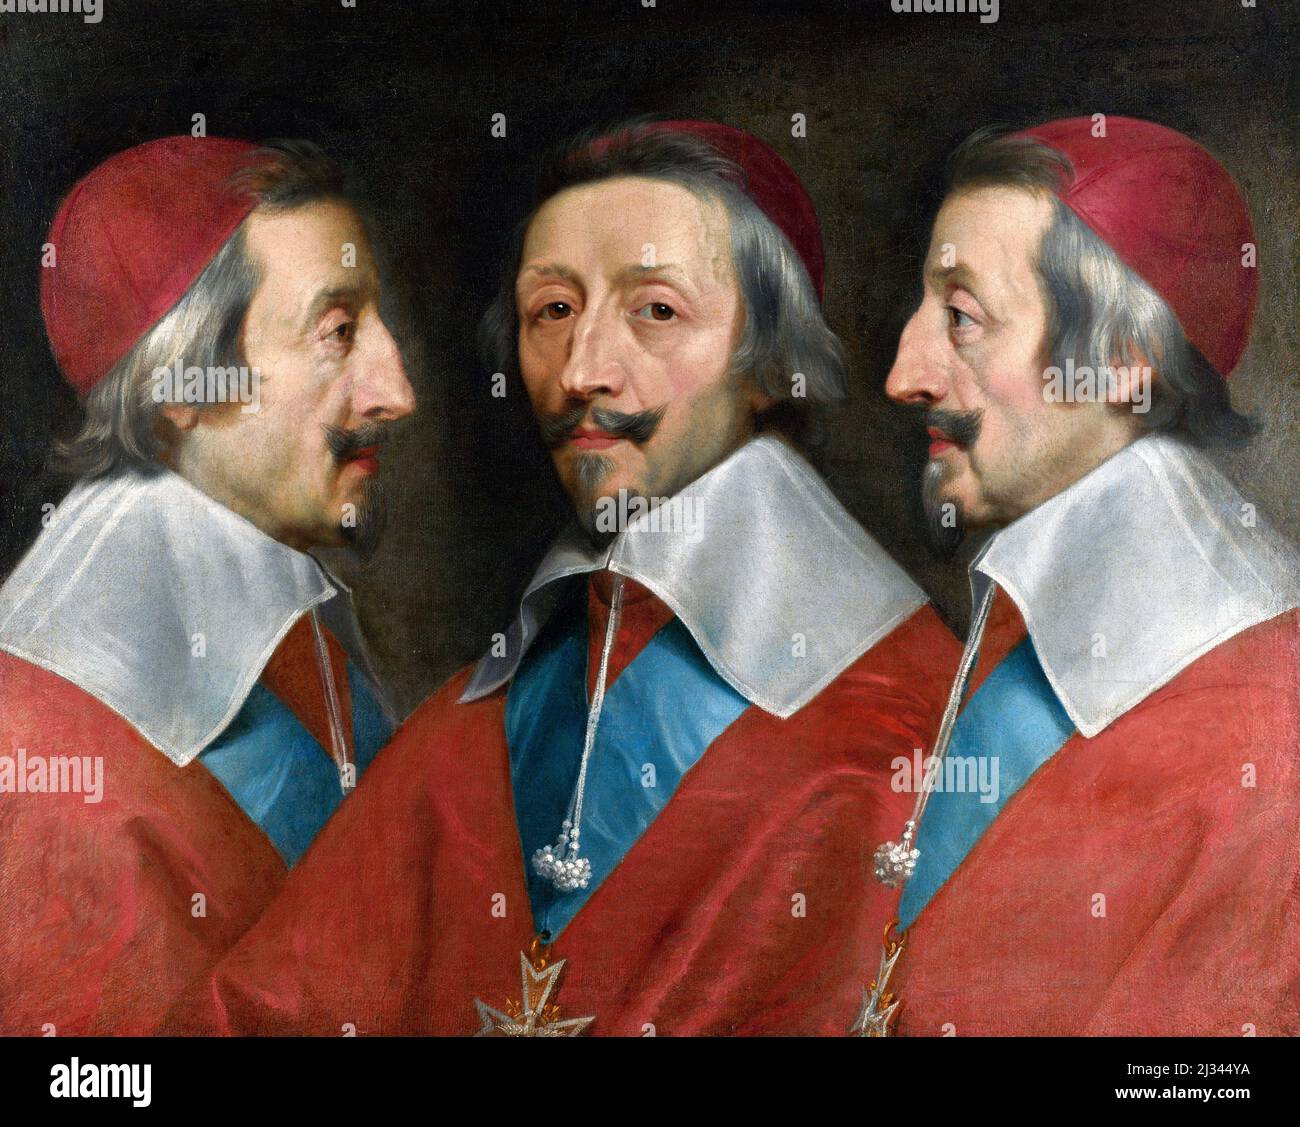 Armand Jean du Plessis, Kardinalherzog von Richelieu und von Fronsac (1585-1642), allgemein als Kardinal Richelieu bezeichnet, war ein französischer Geistlicher, Adliger und Staatsmann und Chief Minister von König Ludwig XIII. Dreifaches Porträt des Kardinals von Richelieu von Philippe de Champaigne, Öl auf Leinwand, um 1642 Stockfoto